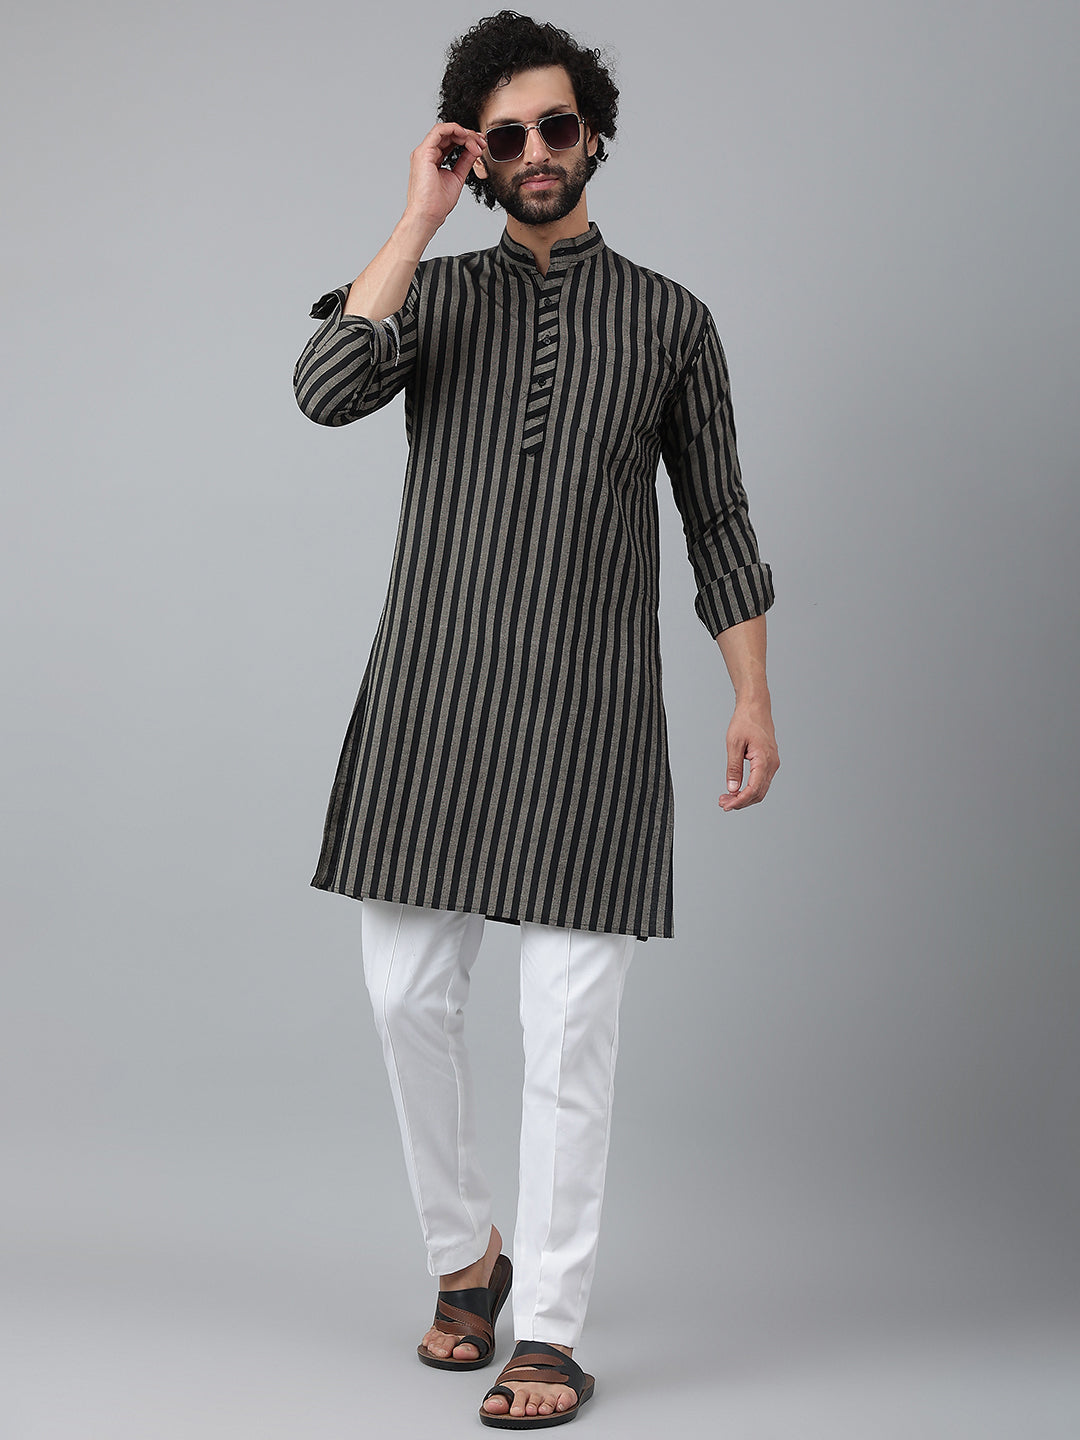 RIAG Black Men's Ethnic Long Kurta And Pyjama Set - Distacart